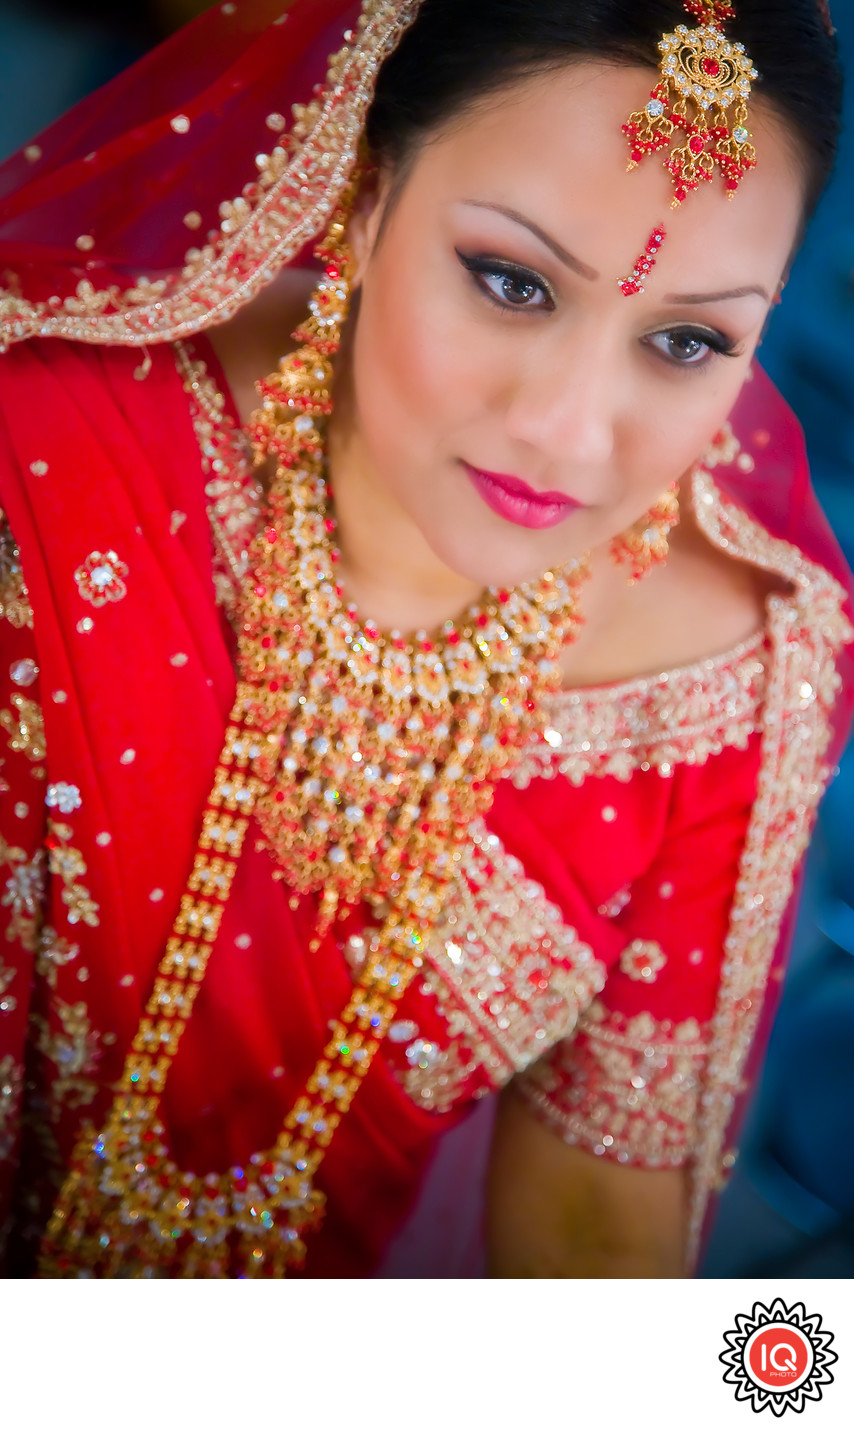 Formal Portrait of Indian Bride